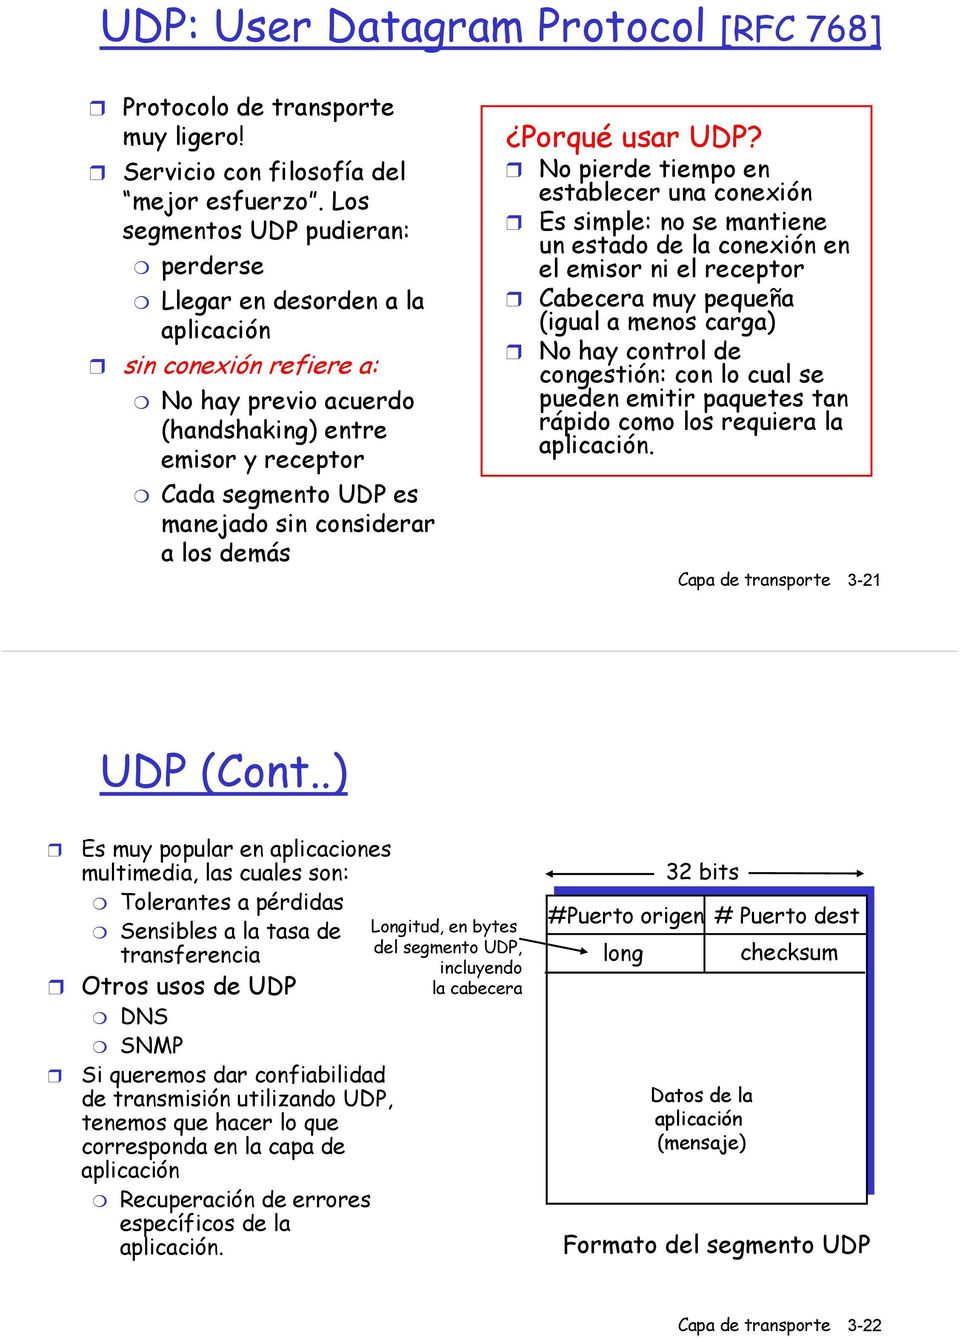 considerar a los demás Porqué usar UDP?